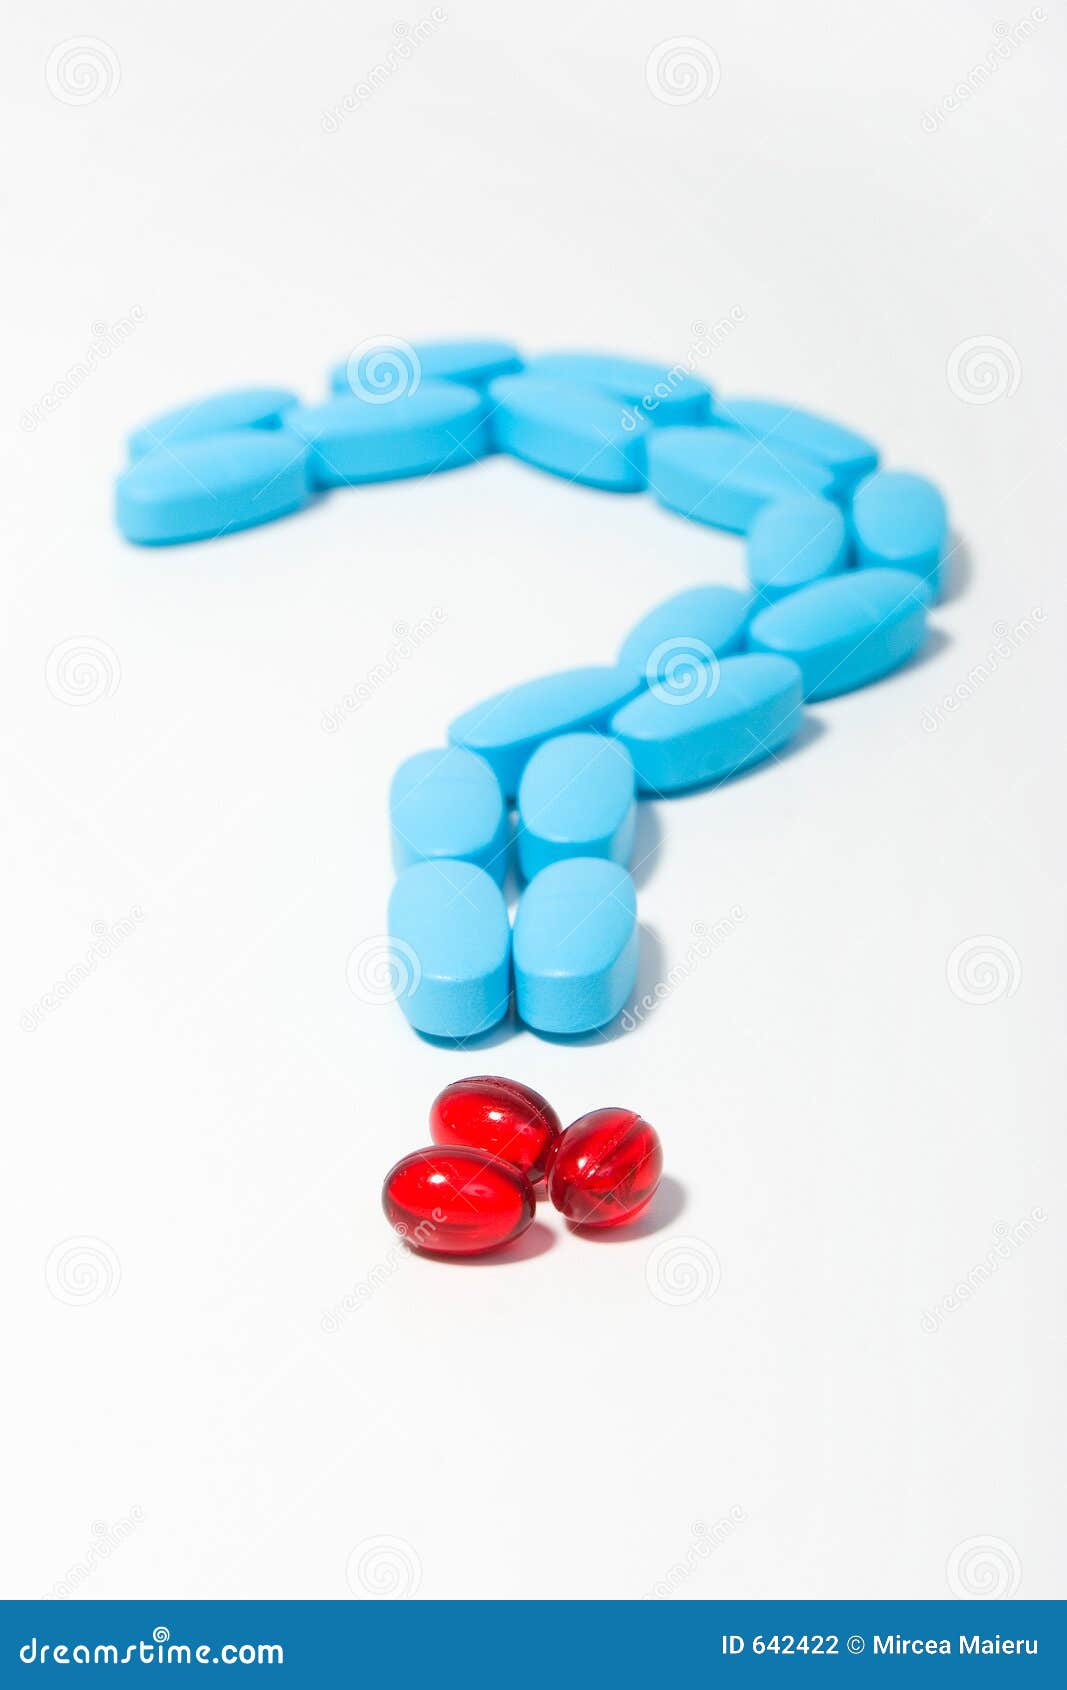 blue-red-pills-question-mark-642422.jpg